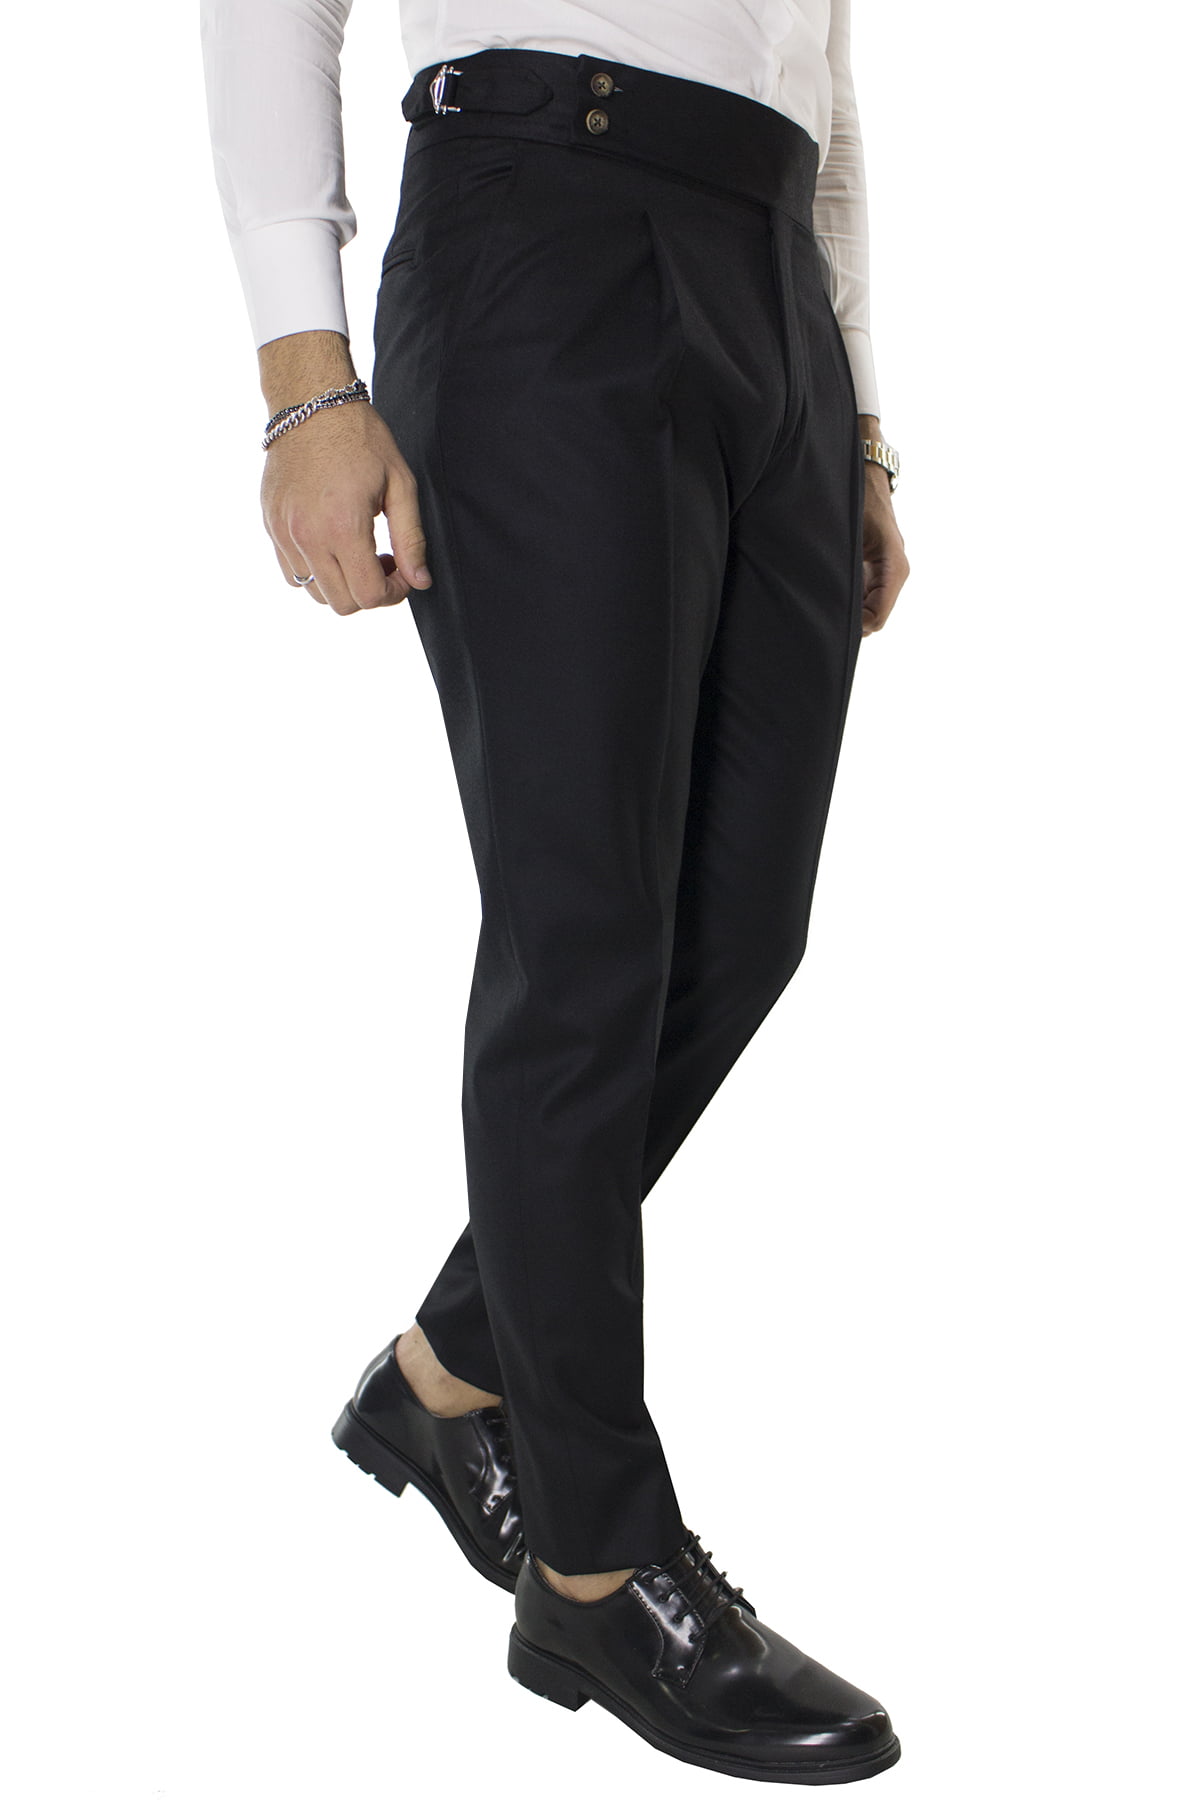 Pantalone uomo nero in lana tinta unita vita alta con pinces fibbie laterali e risvolto 4cm